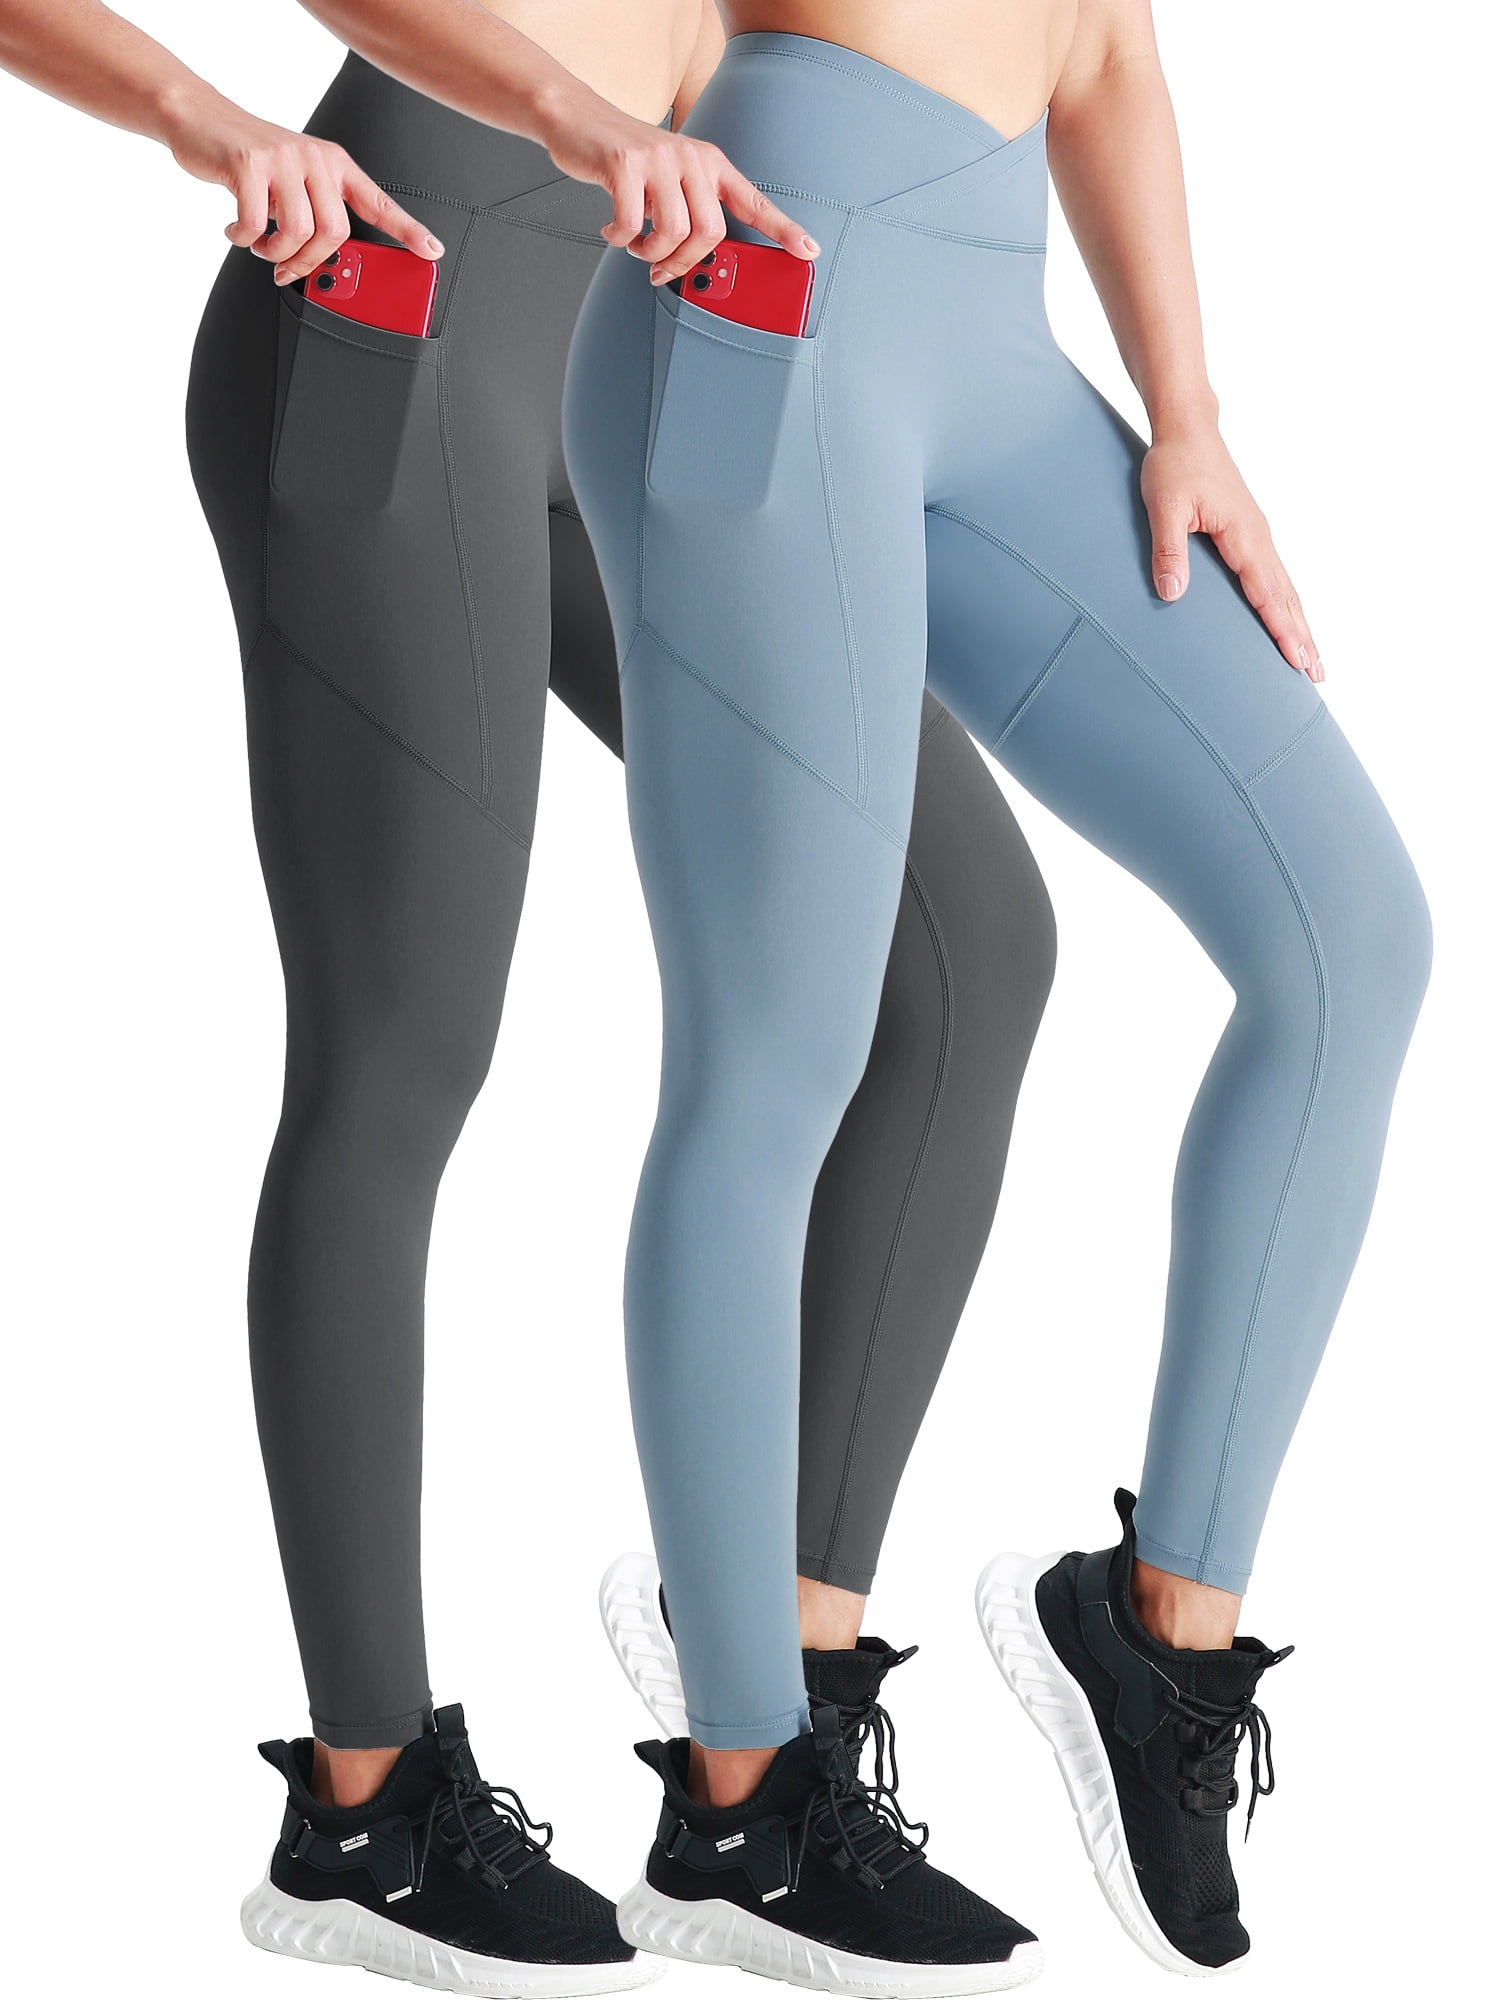 Levmjia Women's Jeans Plus Size Pants Clearance Summer Multi